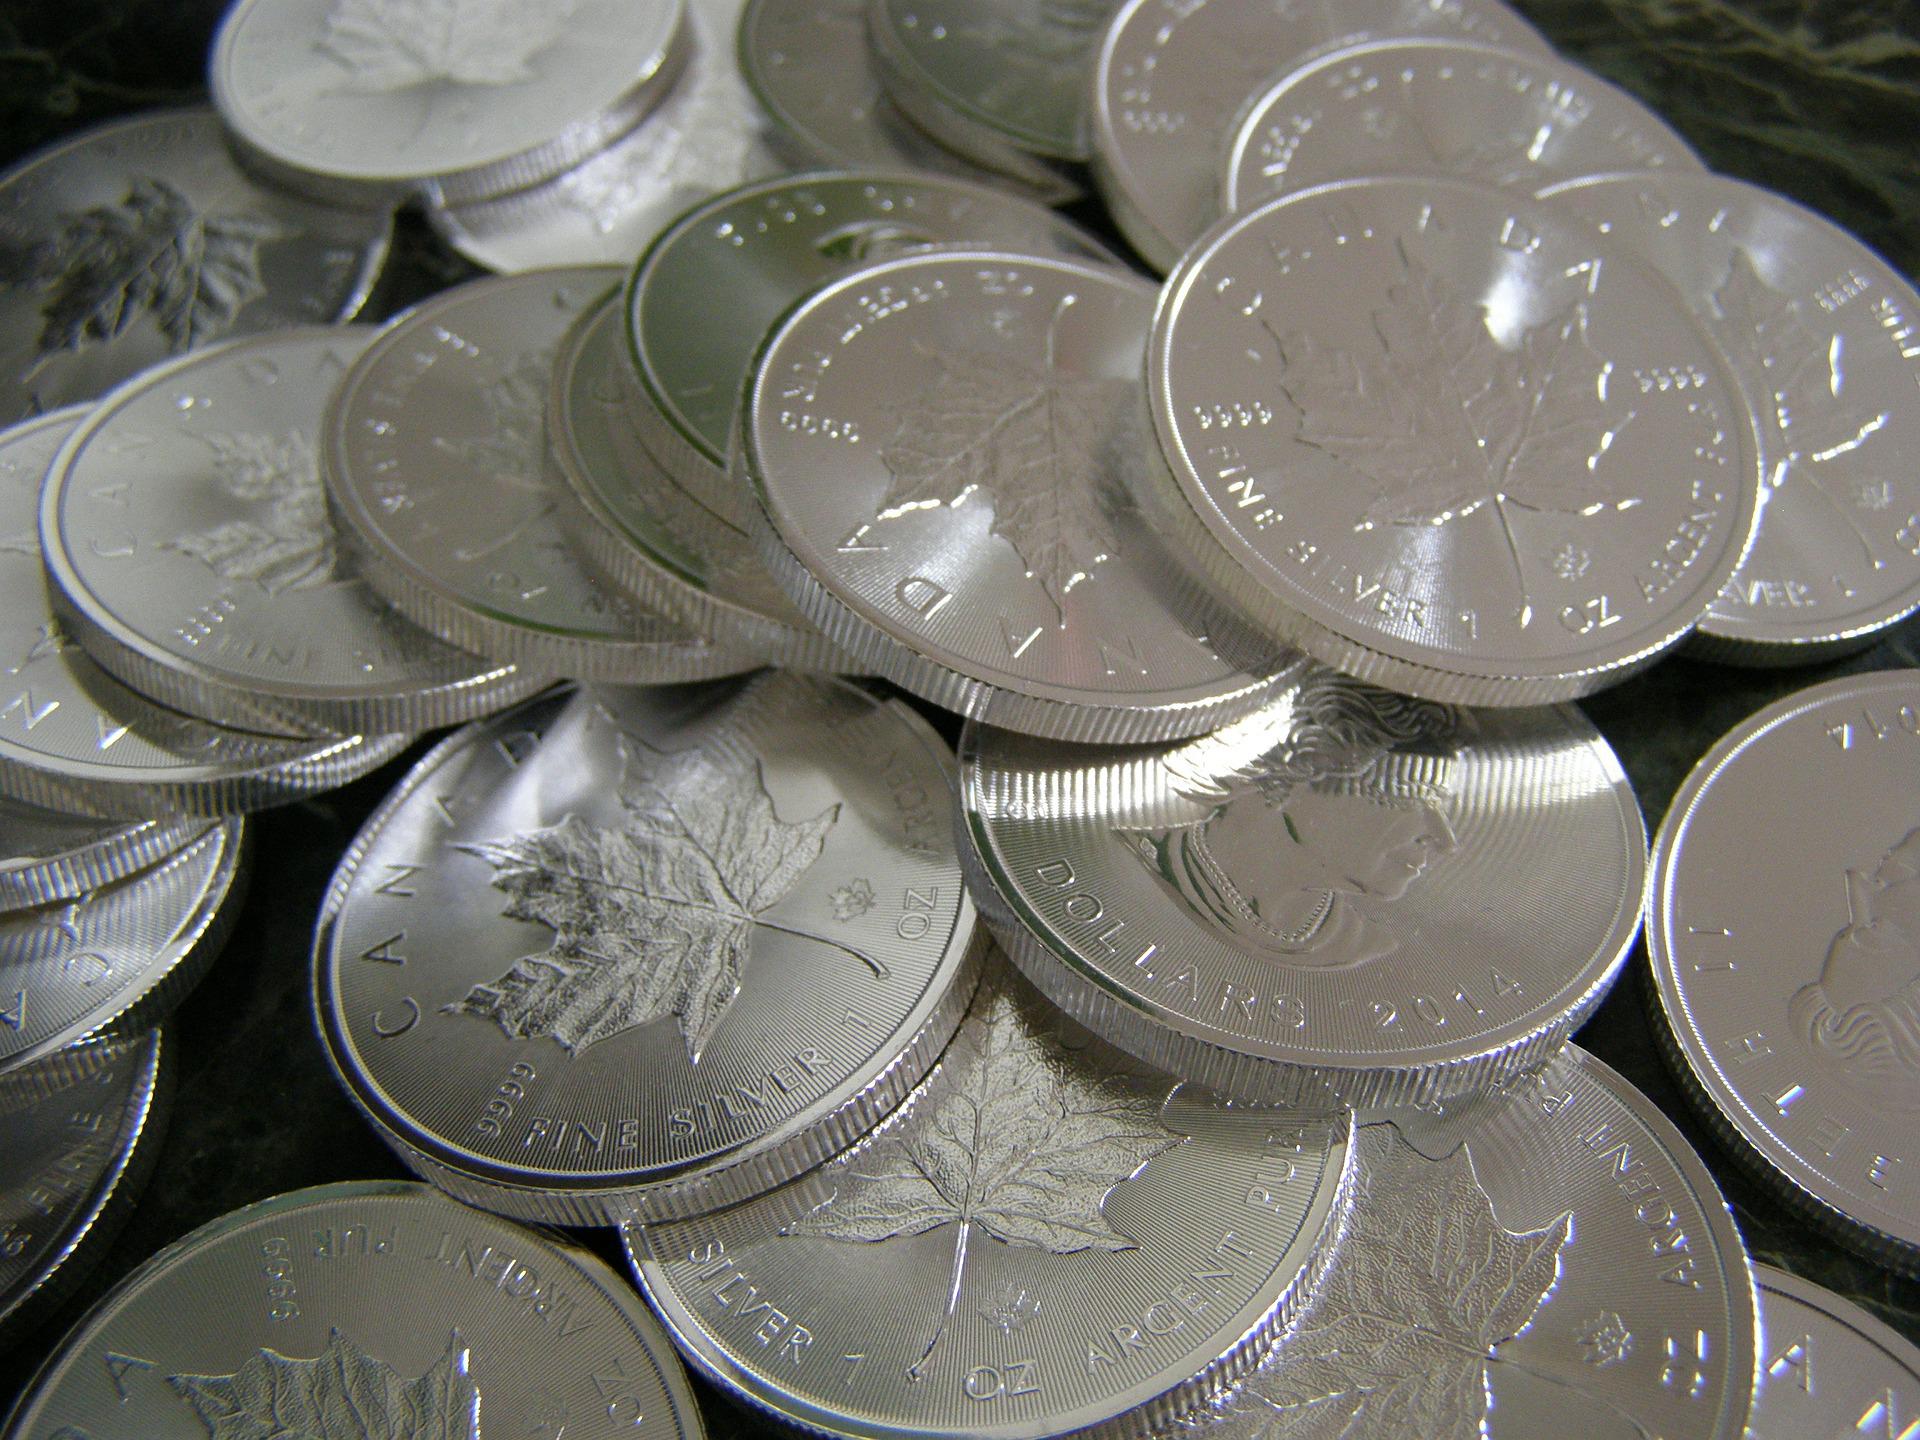 Srebrne jednouncjówki Liść Klonowy to popularna moneta do inwestycji w srebro. Metale szlachetne vs. inflacja to walka prowadzona od lat.